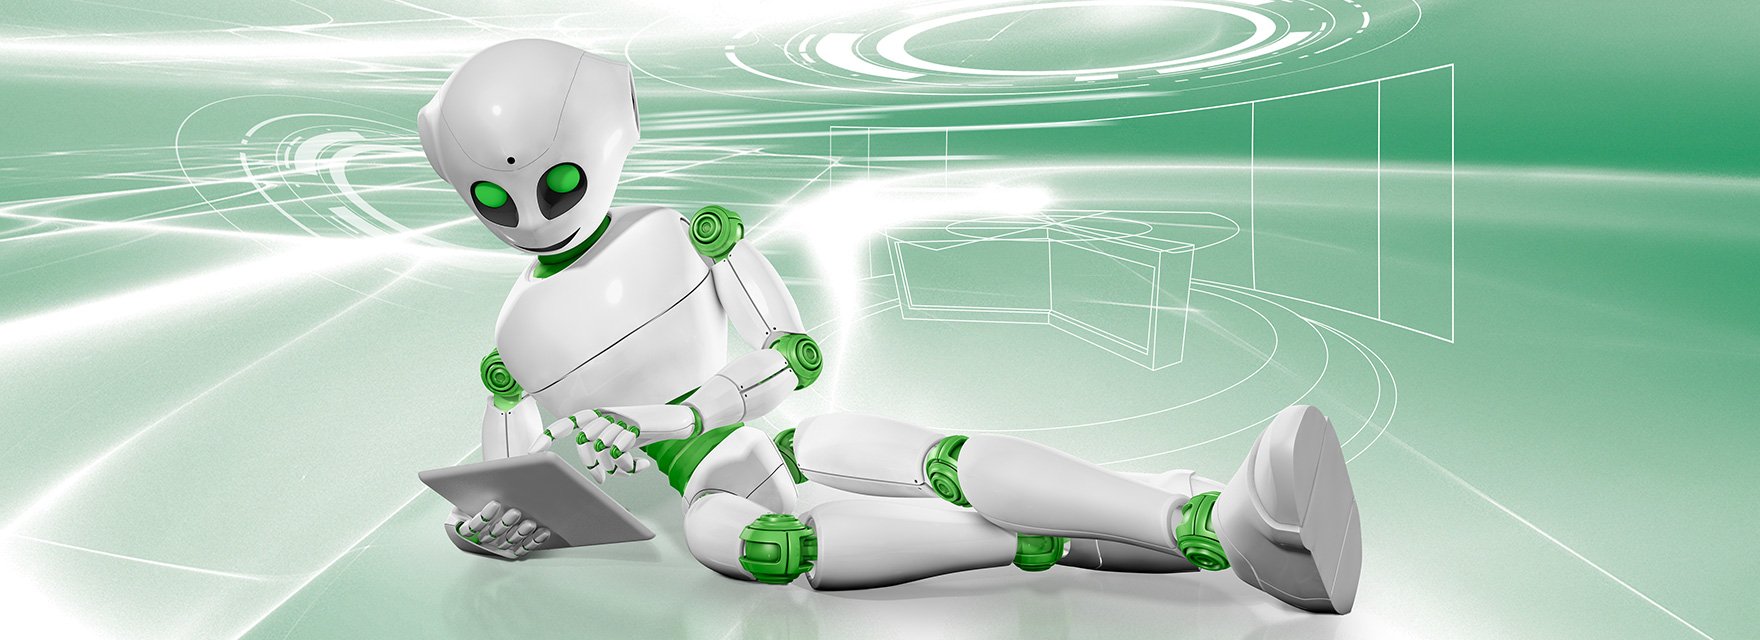 Nori der Roboter liegt mit einem Tablet auf dem Boden vor einem grün-weißen Hintergrund